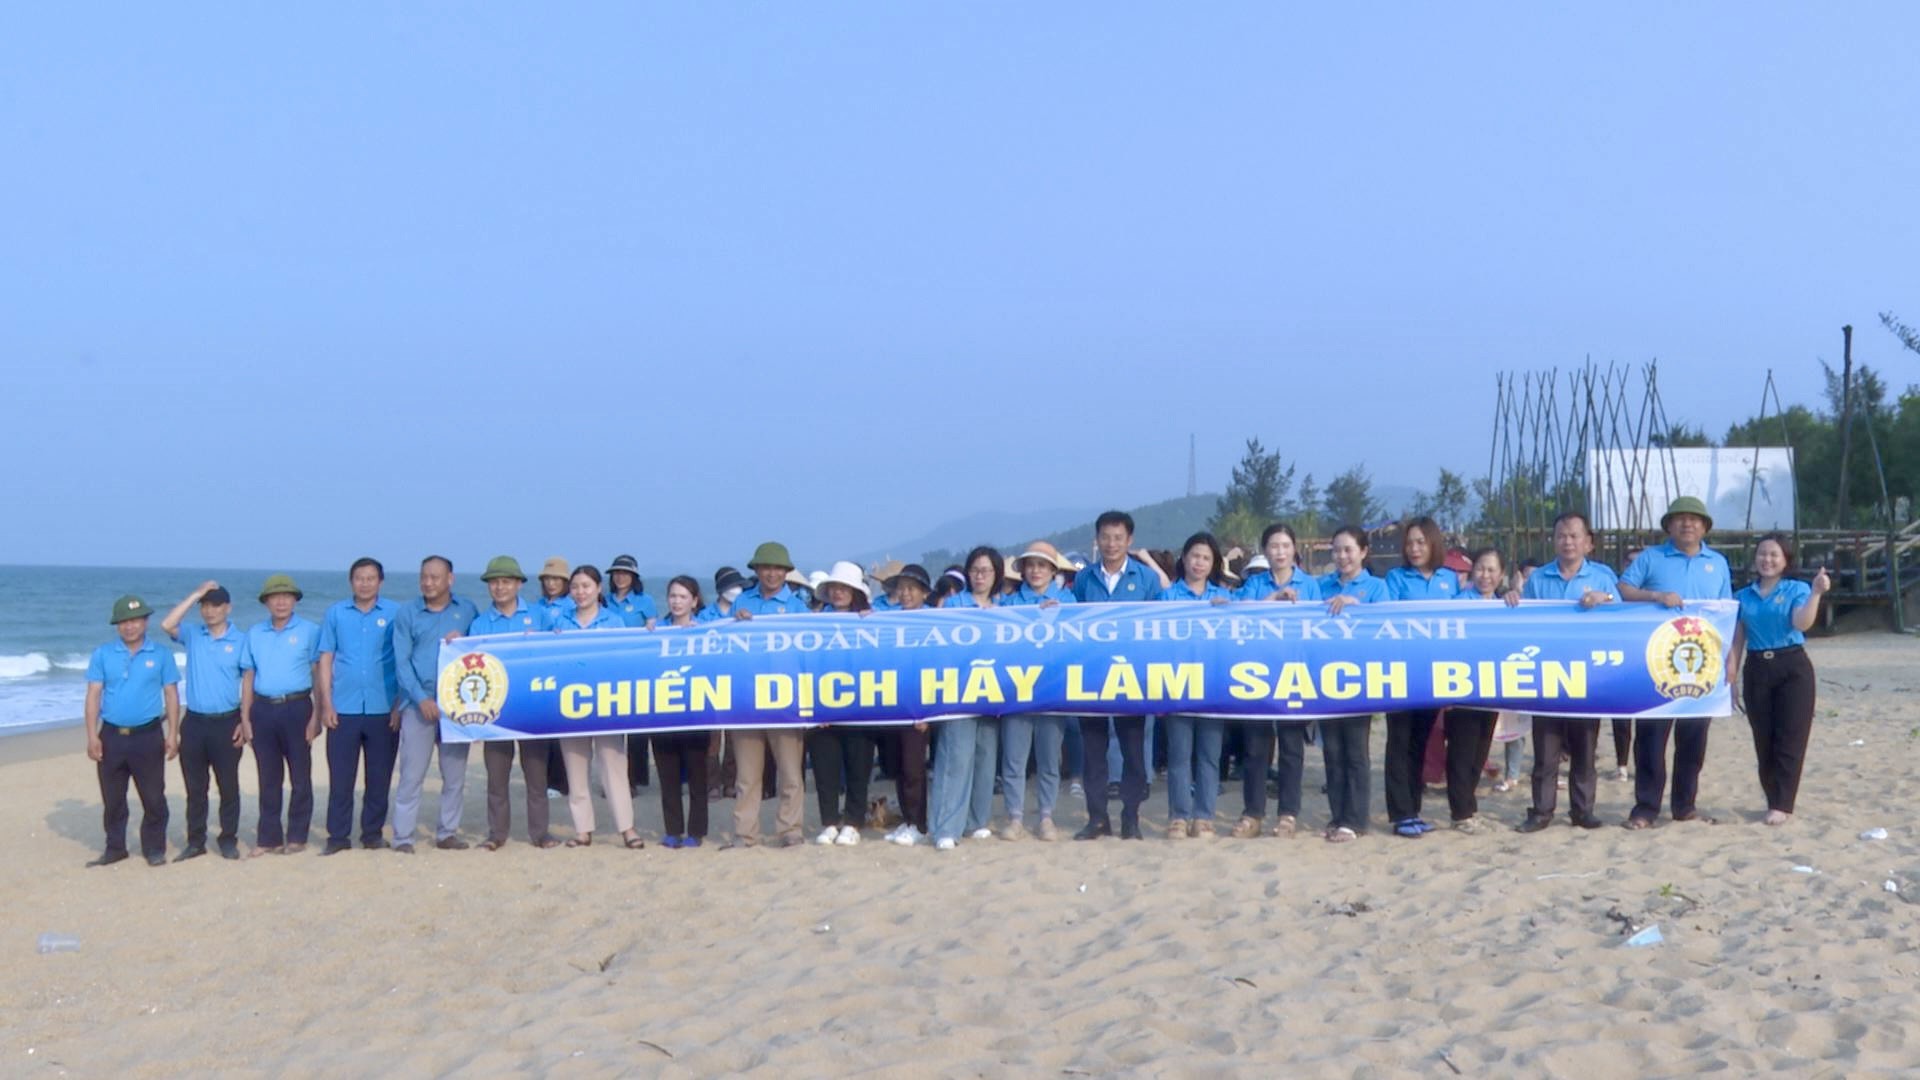 Liên đoàn Lao động huyện ra quân thực hiện "Chiến dịch Hãy làm sạch biển"